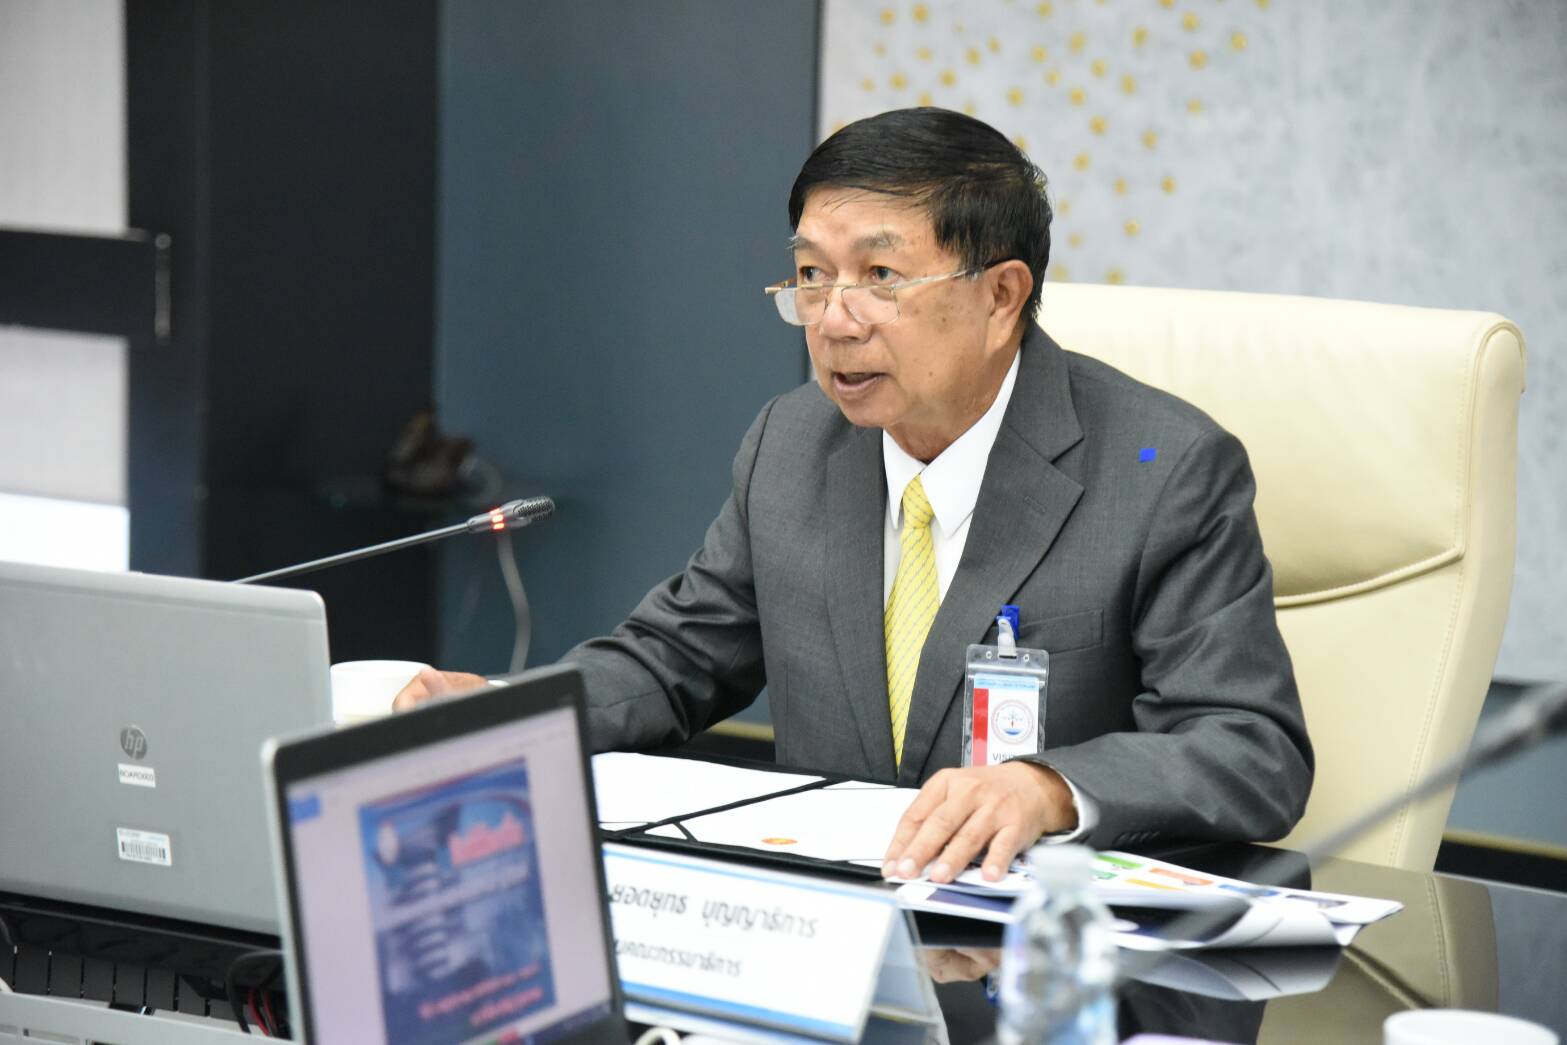 คณะกรรมาธิการการคมนาคม วุฒิสภา เดินทางไปร่วมประชุมหารือแลกเปลี่ยนความคิดเห็นร่วมกับผู้บริหารบริษัท วิทยุการบินแห่งประเทศไทย